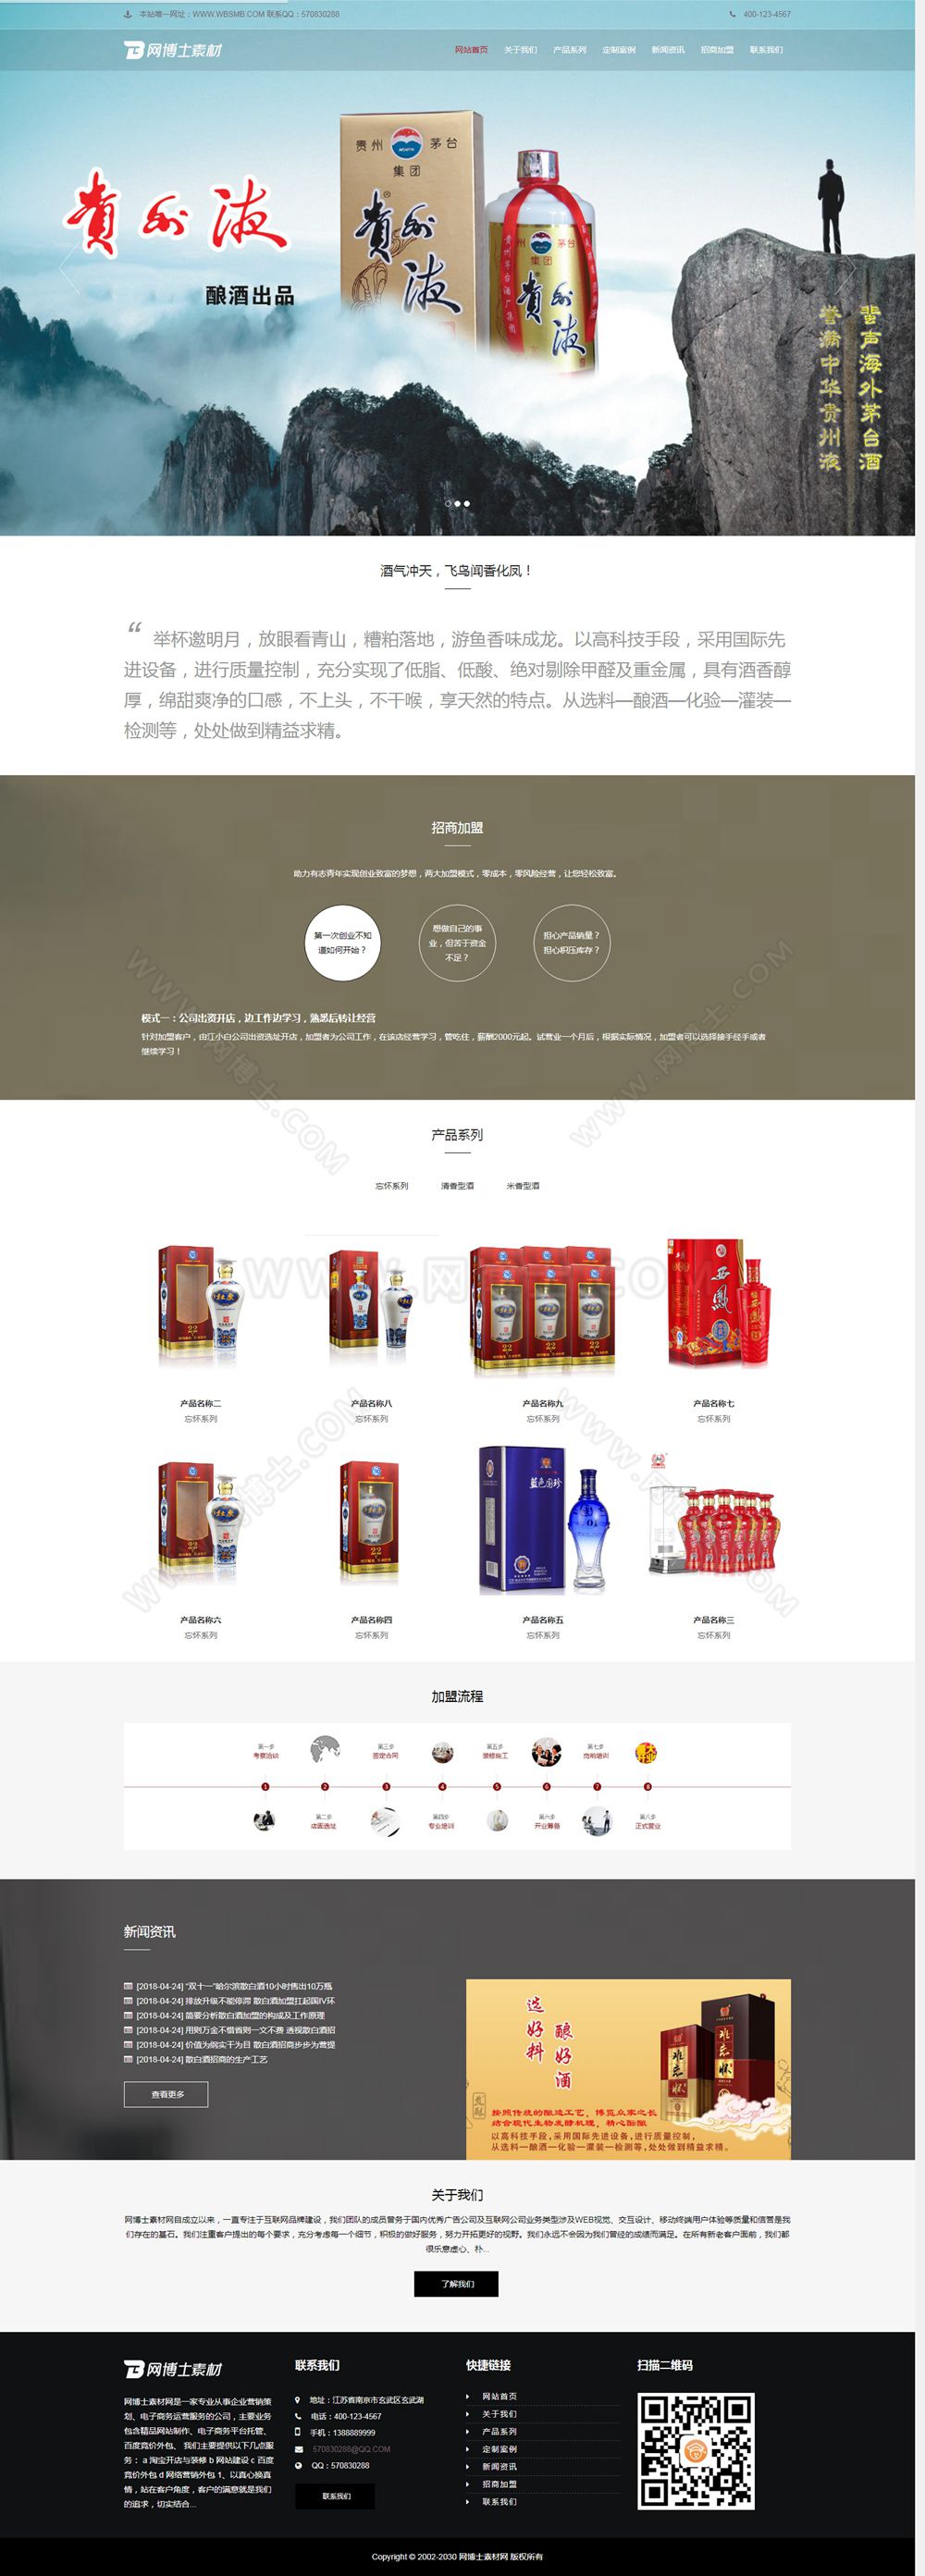 （自适应手机版）响应式高端酒业包装设计类网站织梦模板 HTML5白酒包装礼盒网站